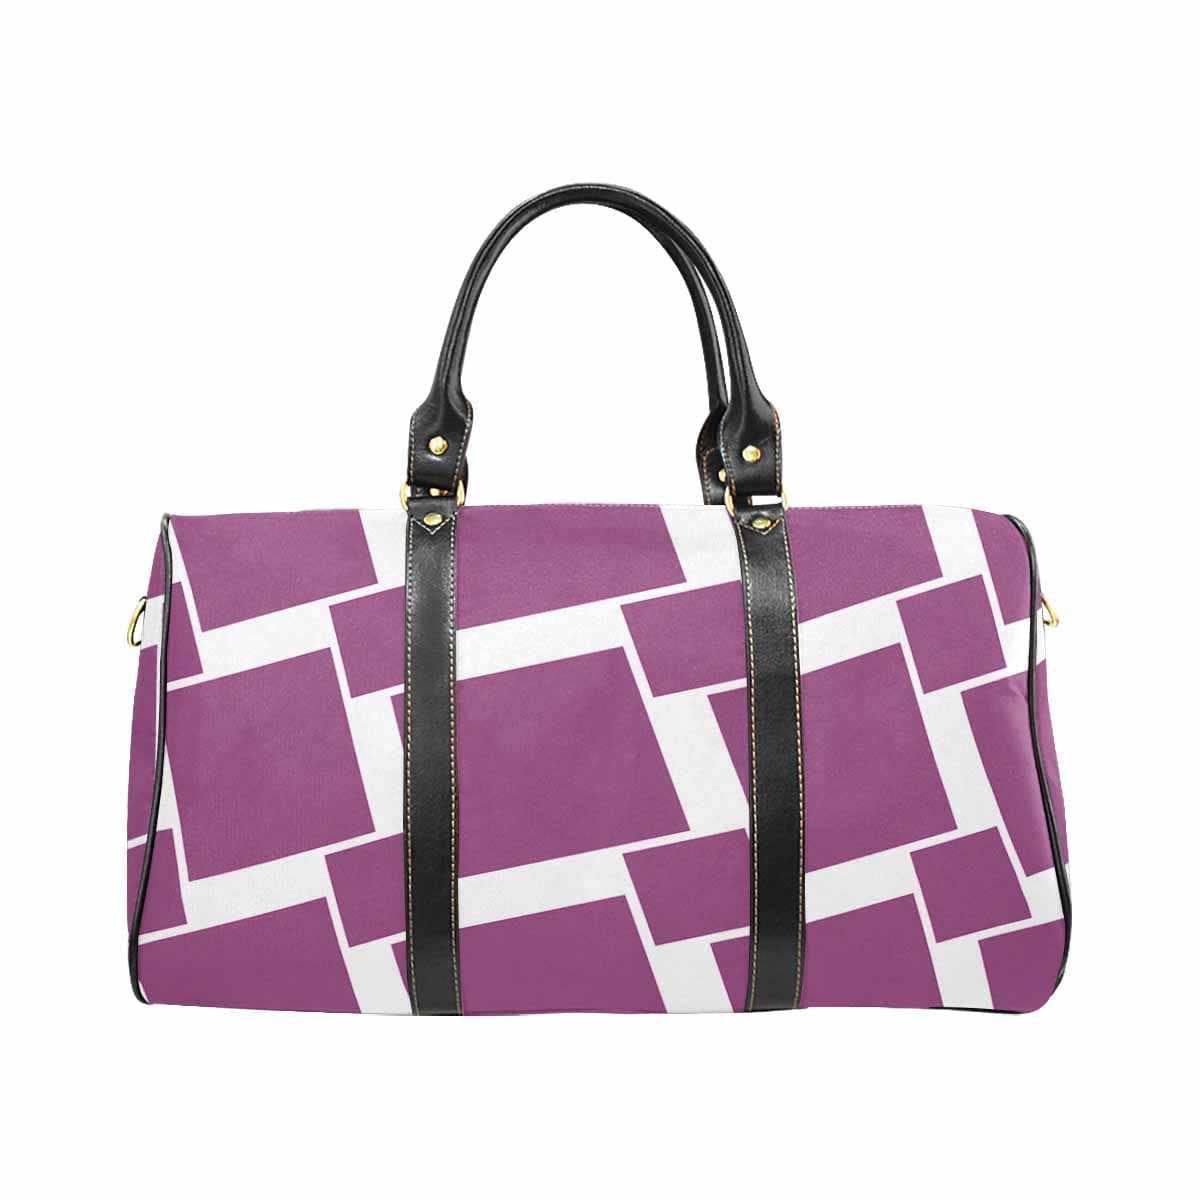 Travel Bag Adjustable Shoulder Strap Carry On Bag Purple - Bags | Travel Bags